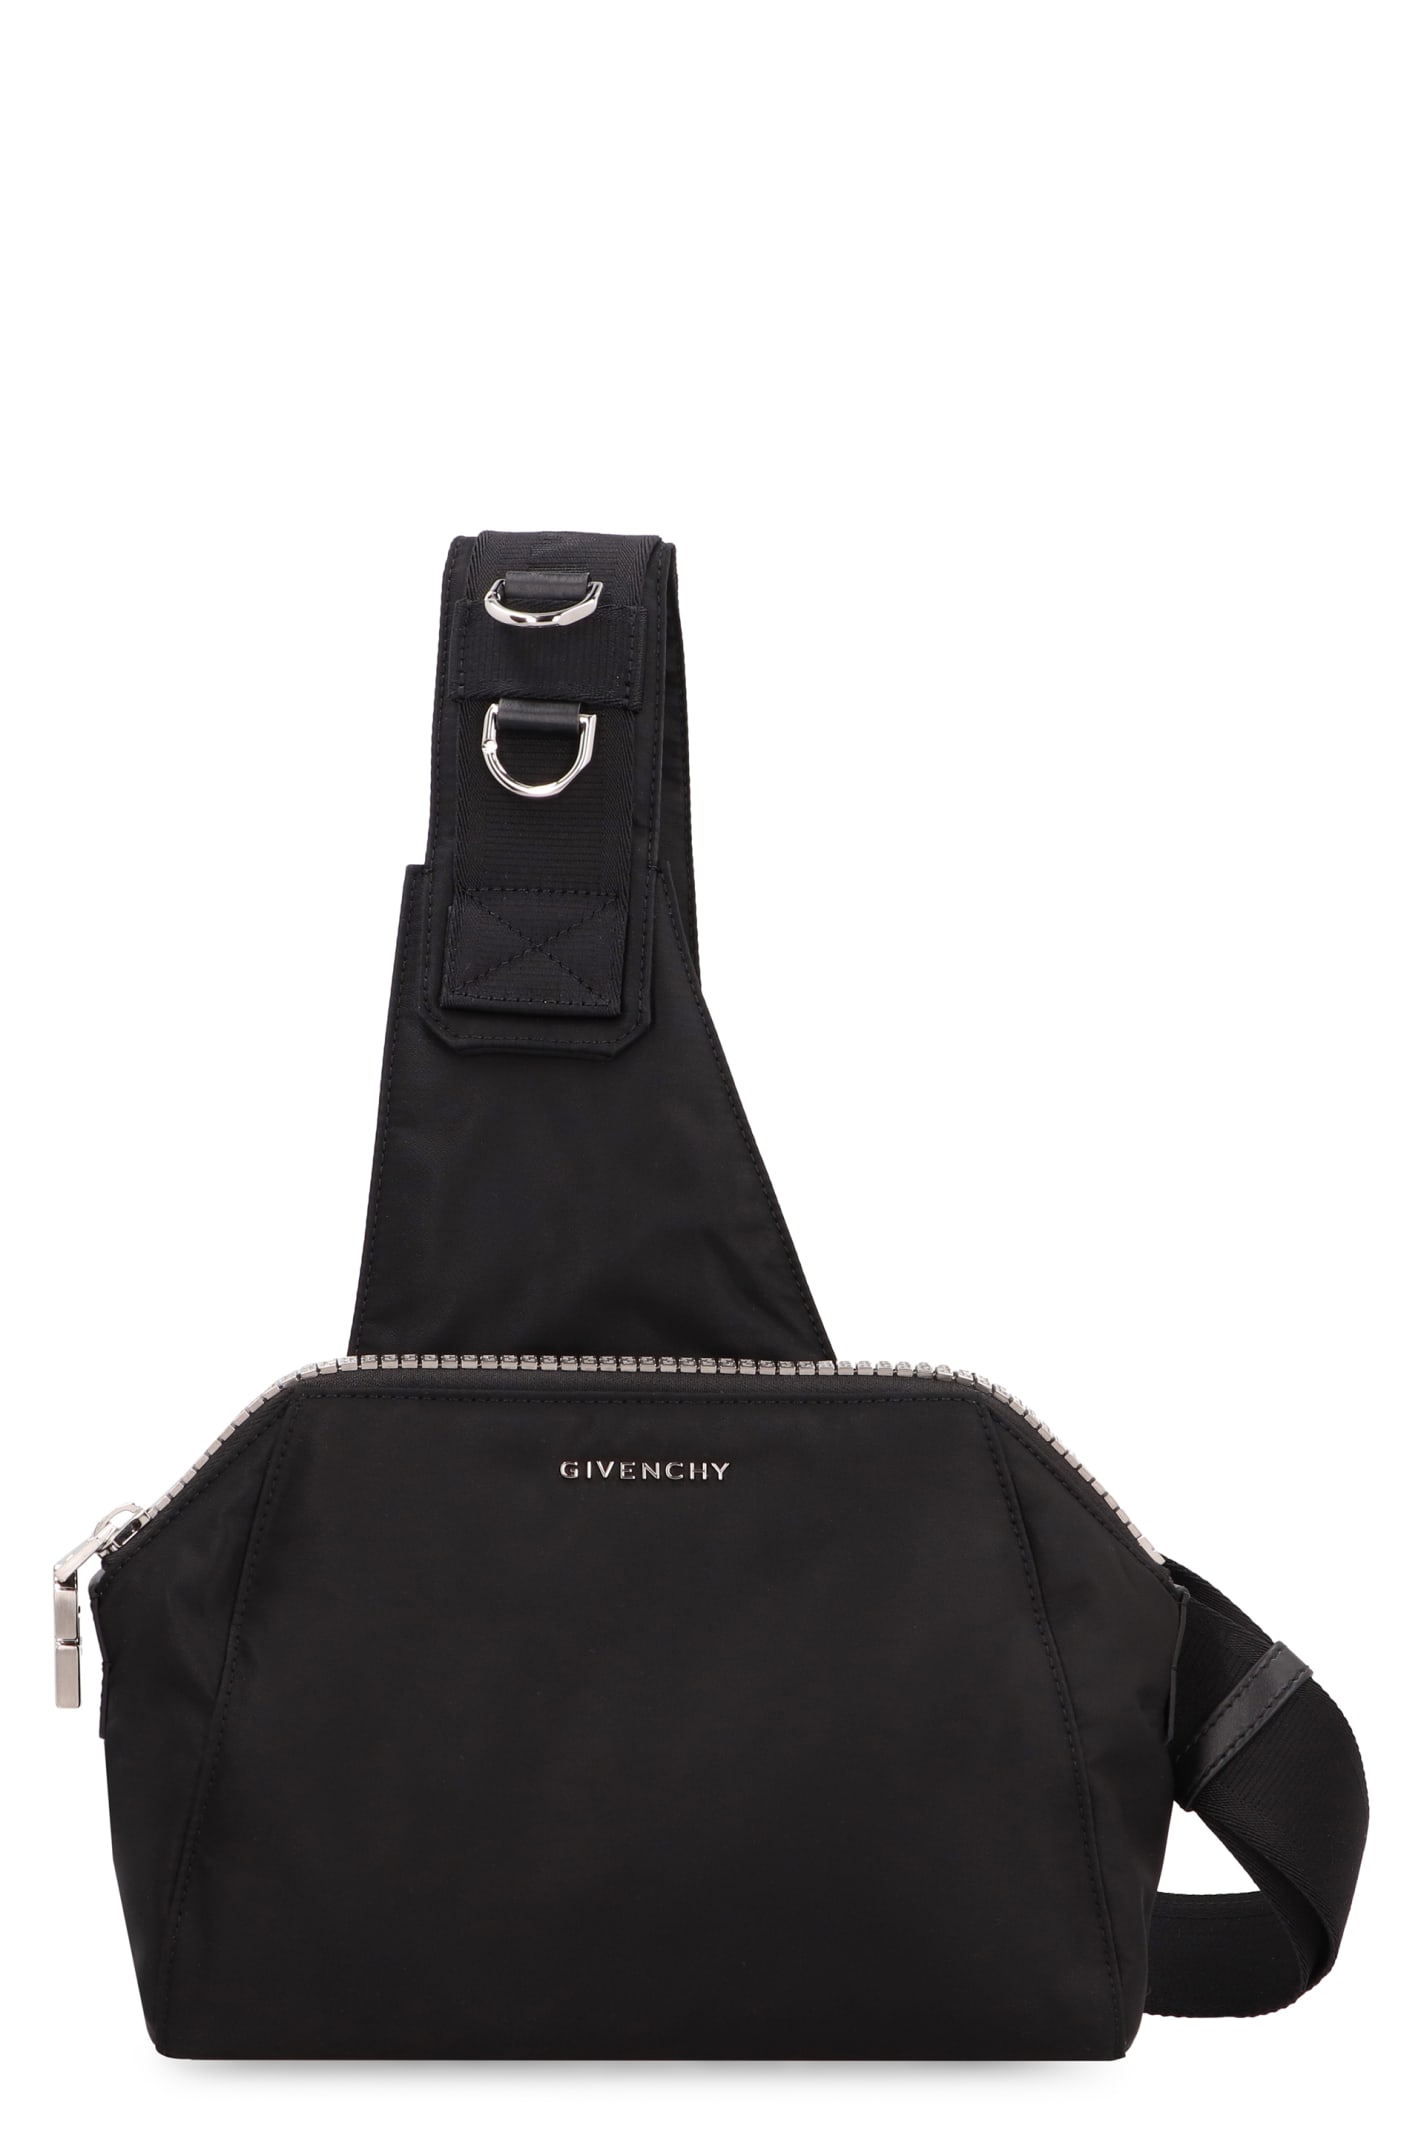 Givenchy Antigona Nylon And Leather Bag